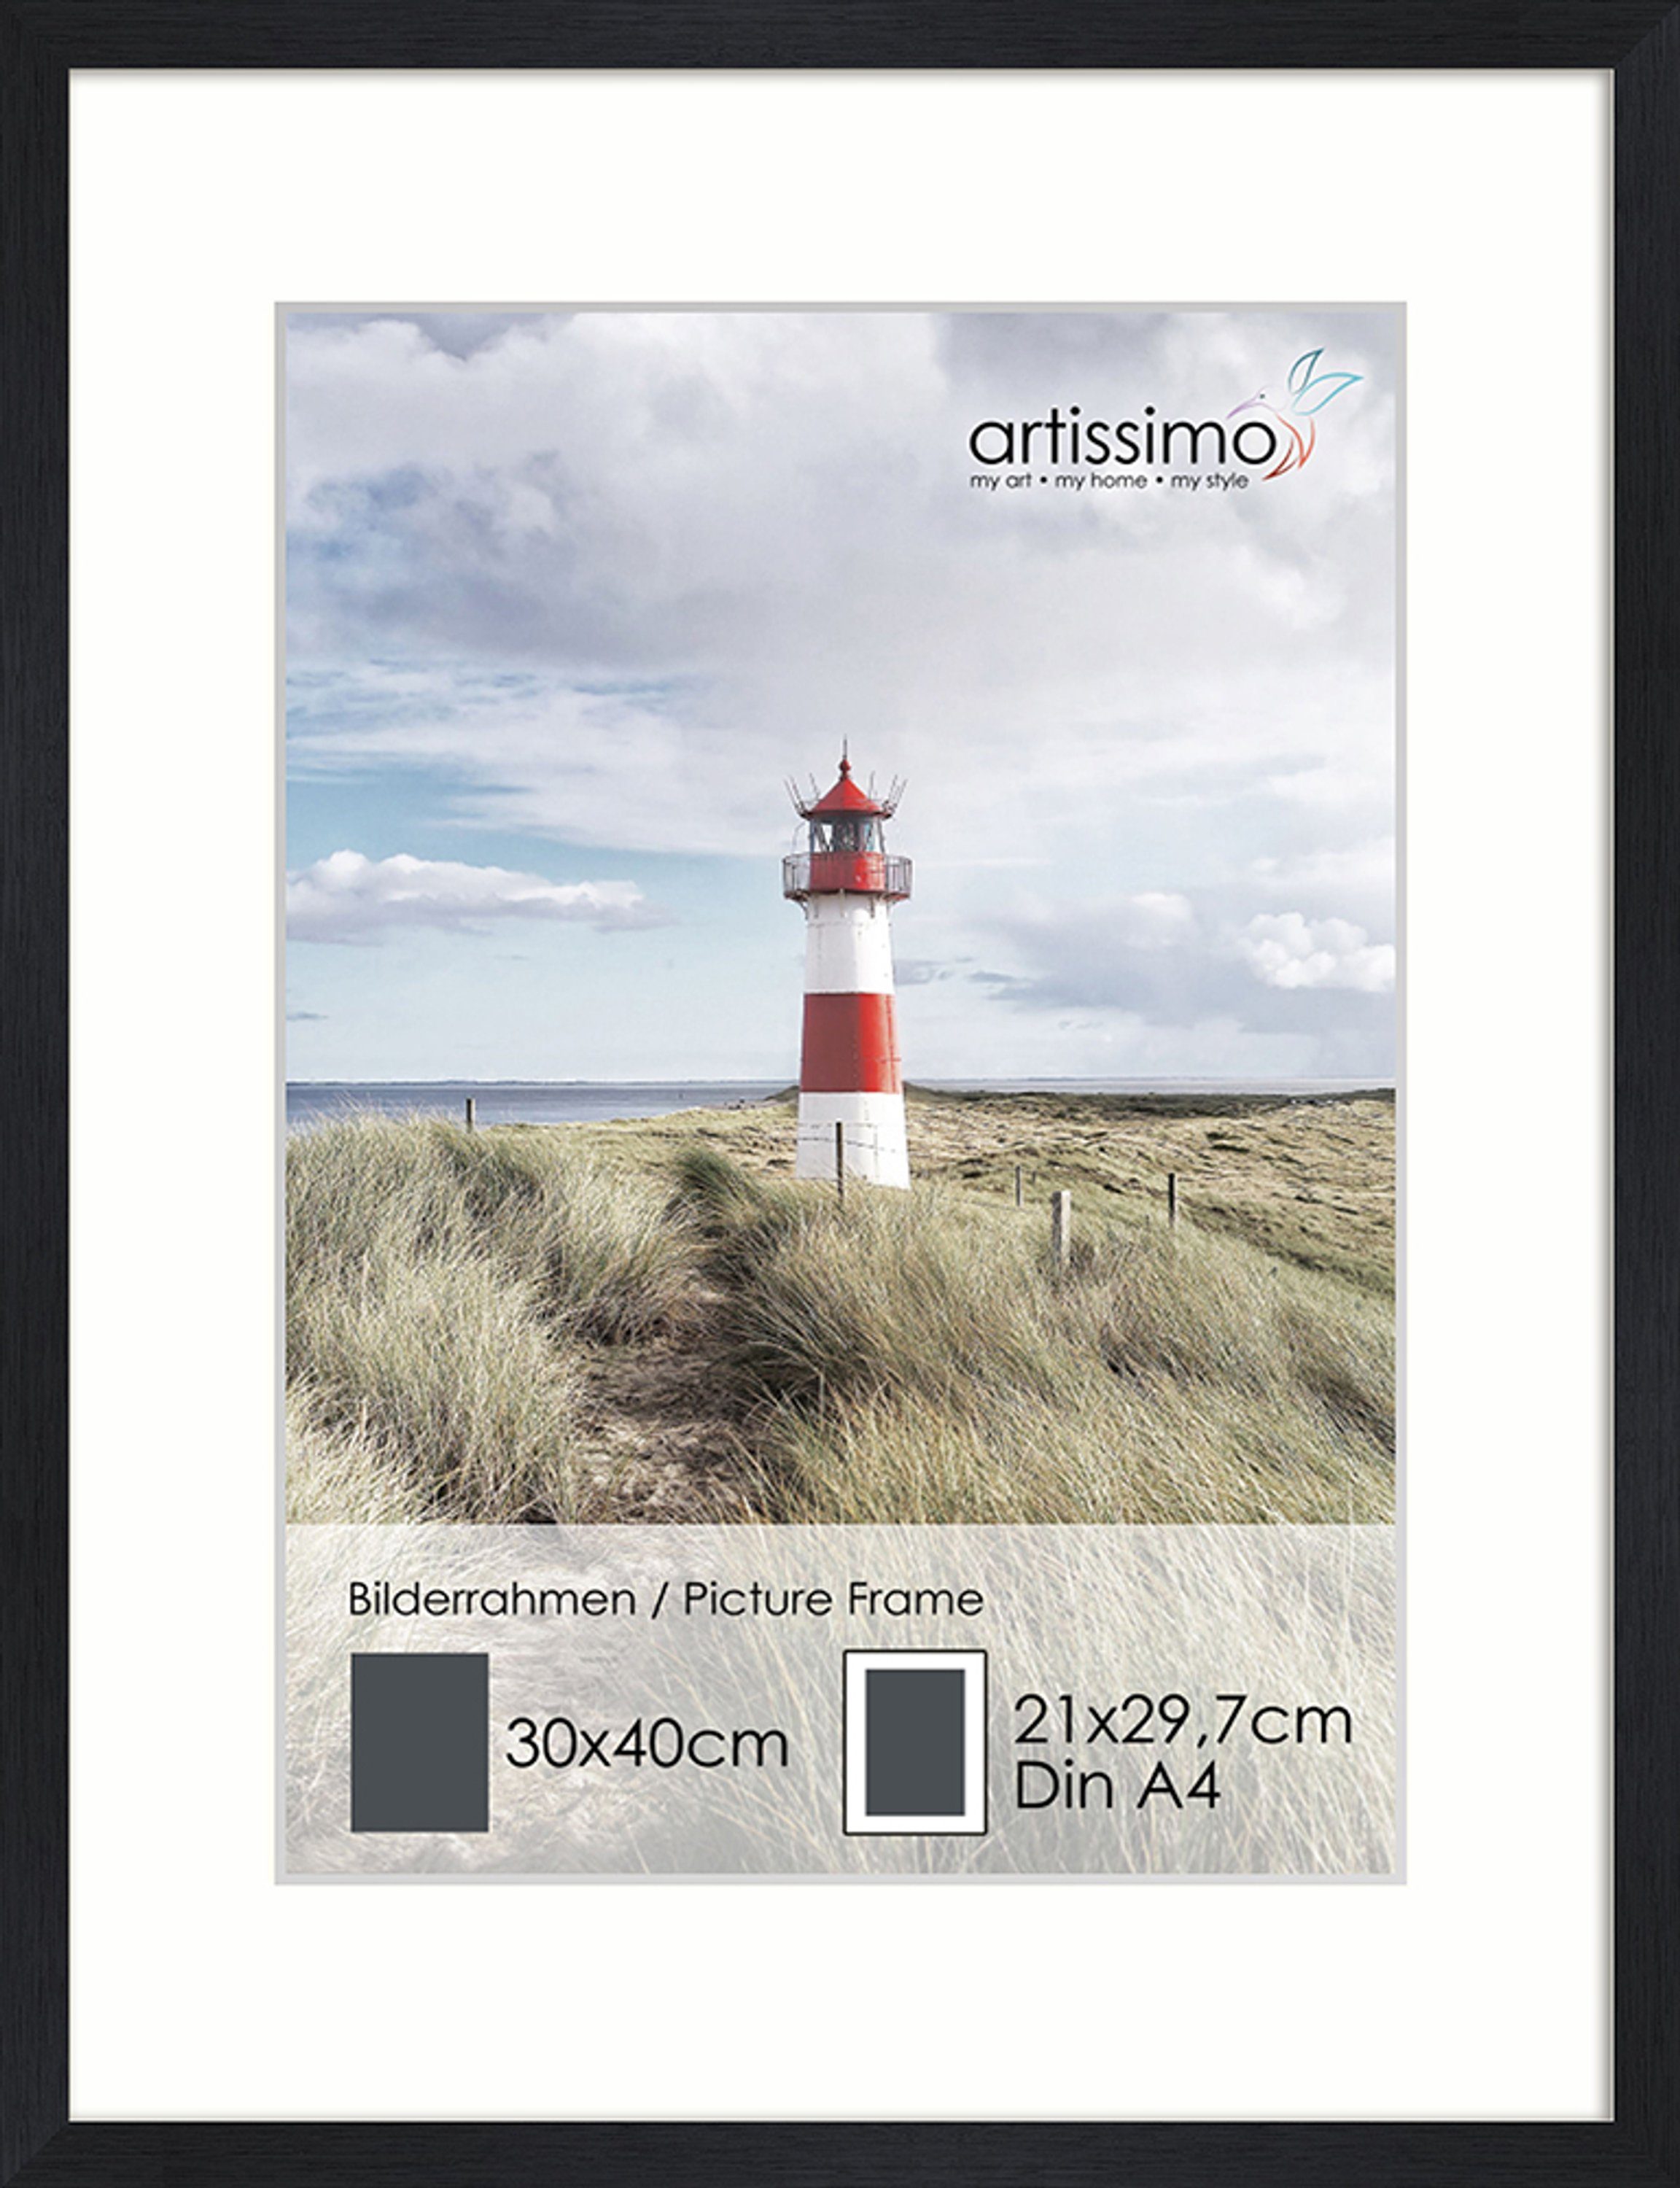 artissimo Bilderrahmen Rahmen Bilderrahmen Schwarz Passepartout inkl DinA4 für Poster 30x40cm